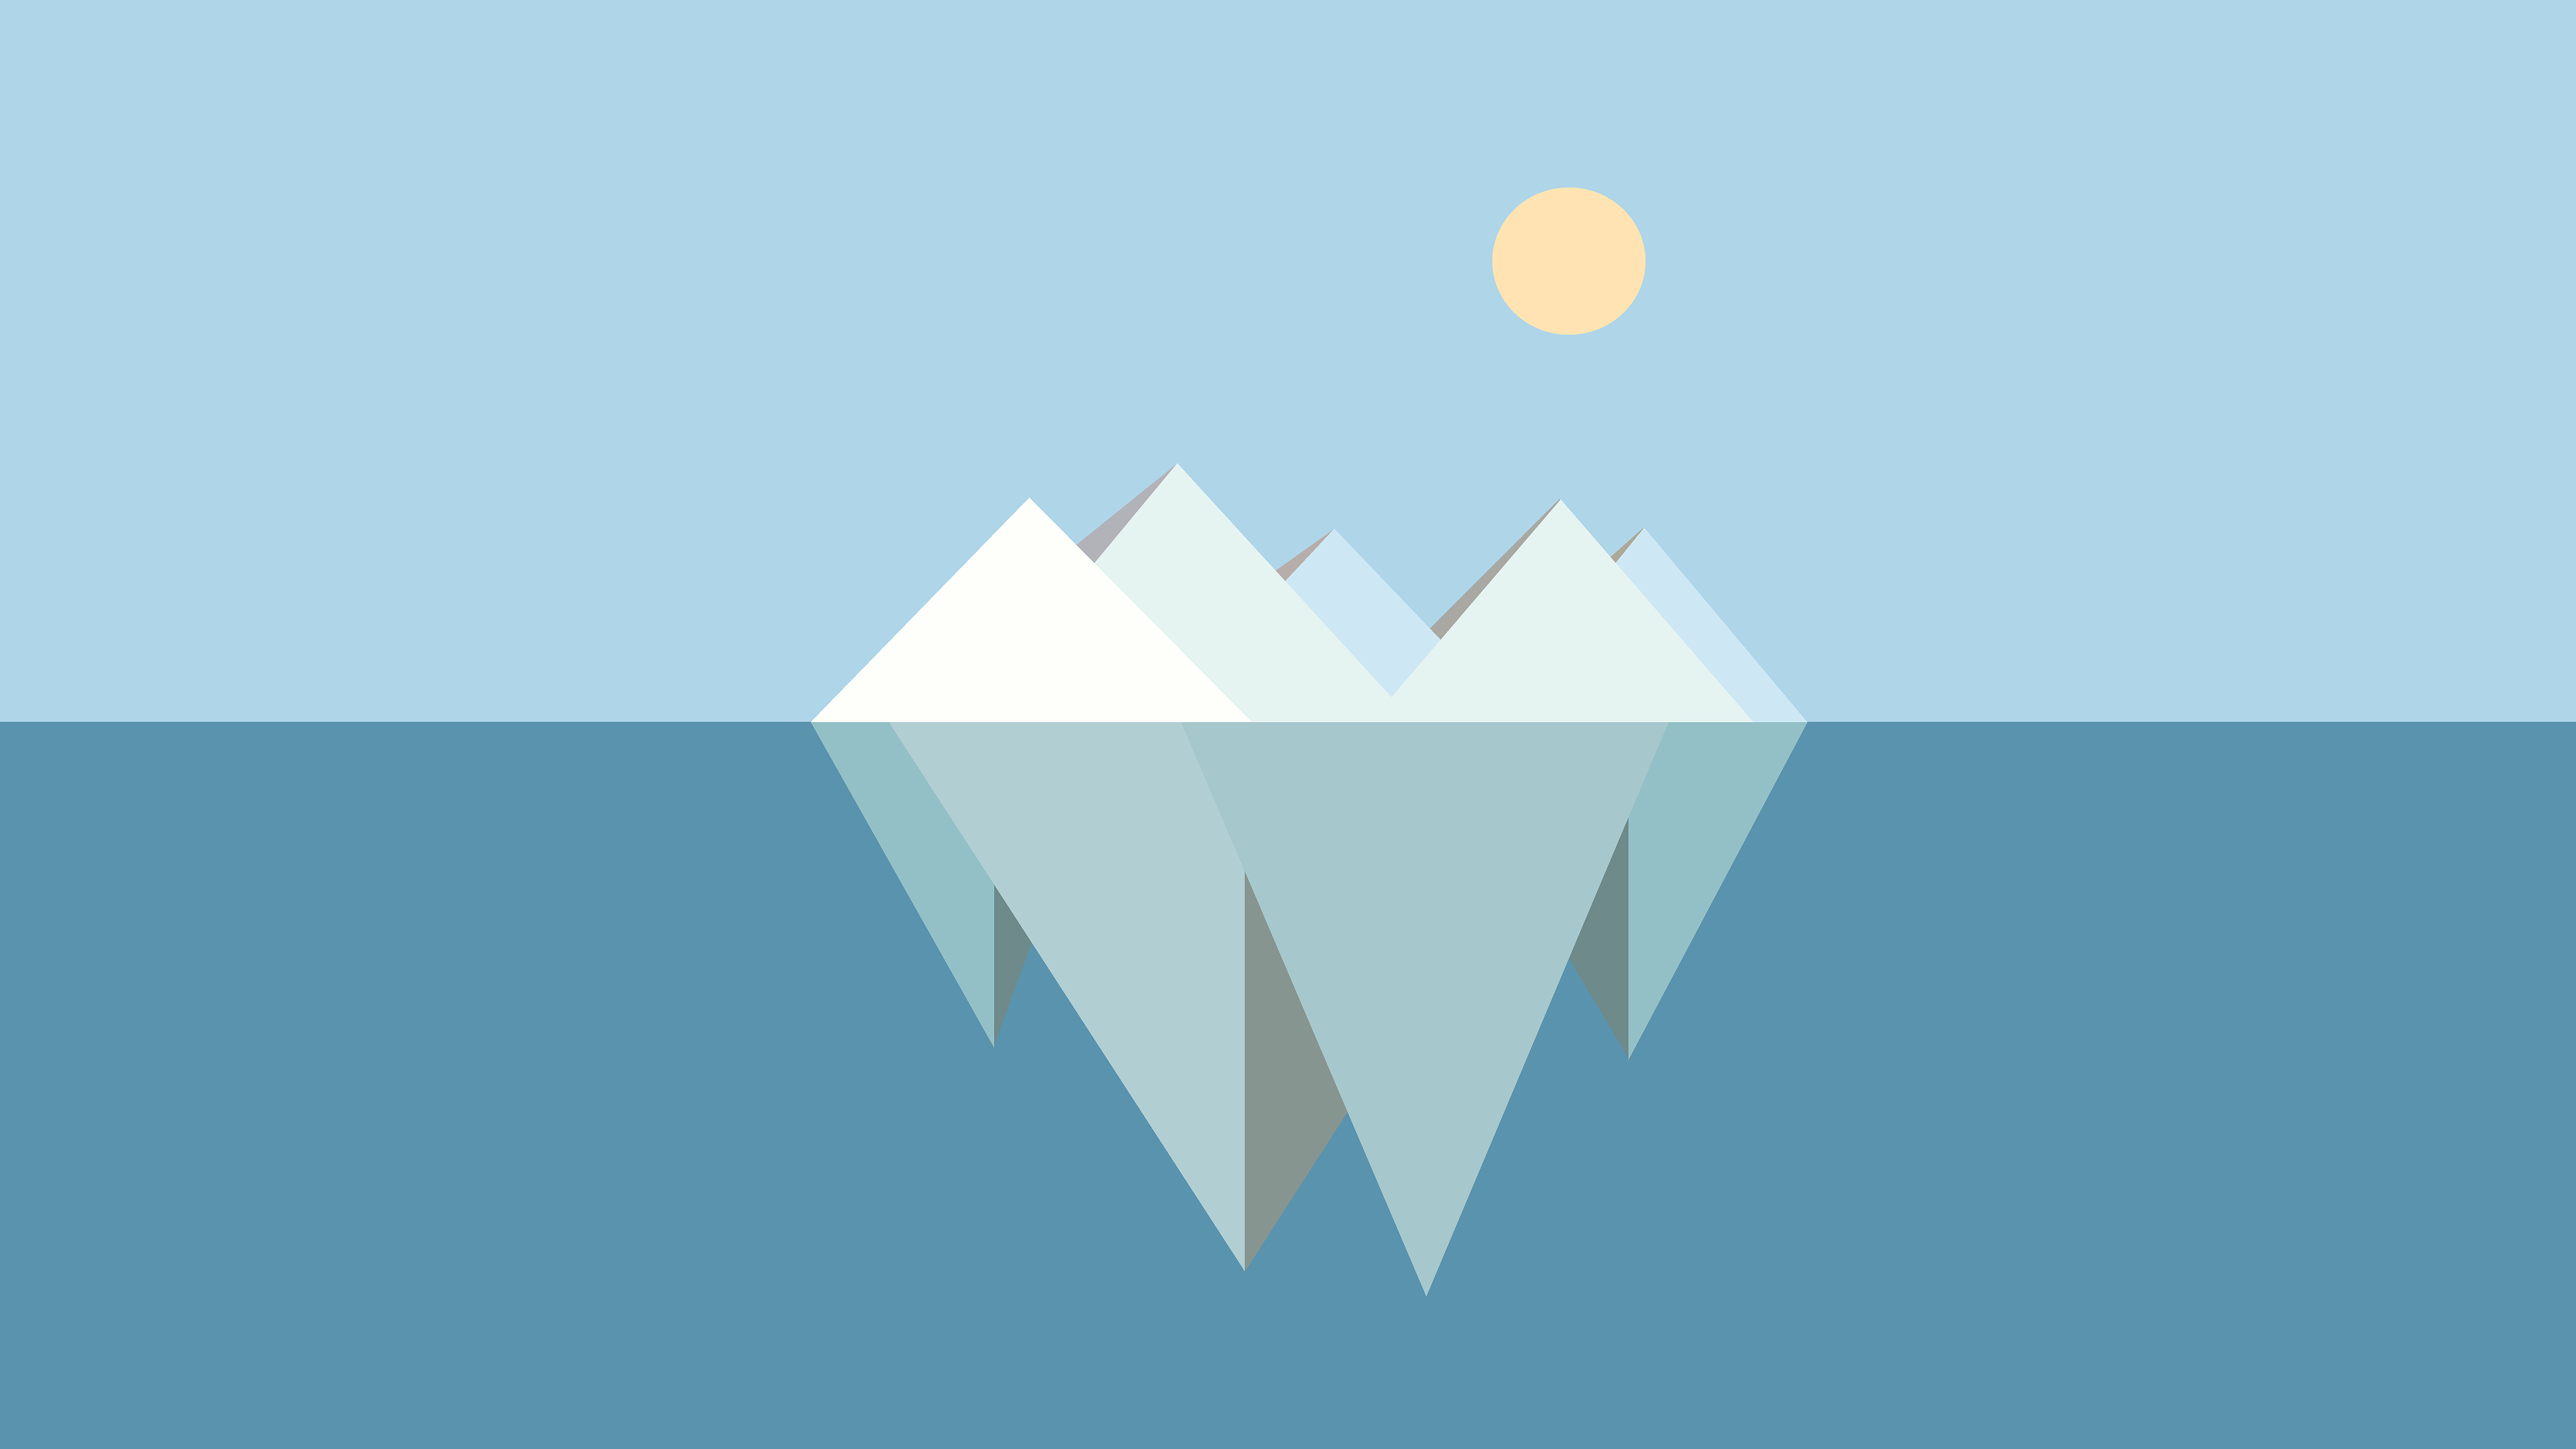 Iceberg Minimalist Wallpapers